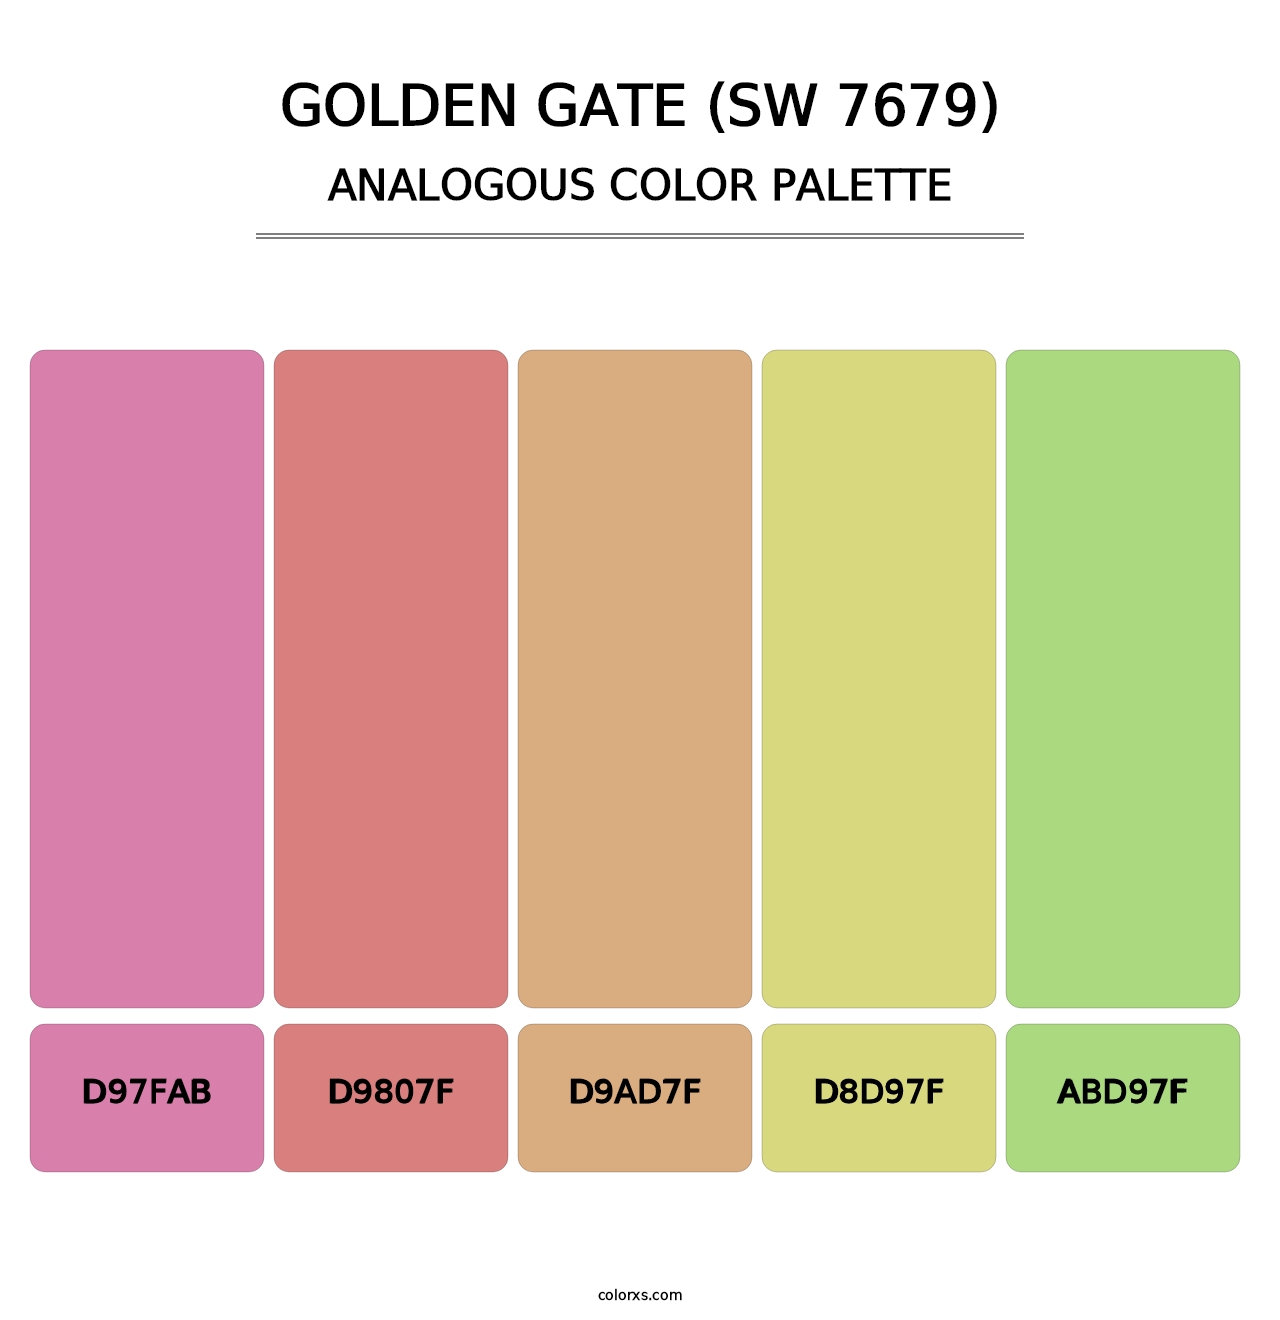 Golden Gate (SW 7679) - Analogous Color Palette